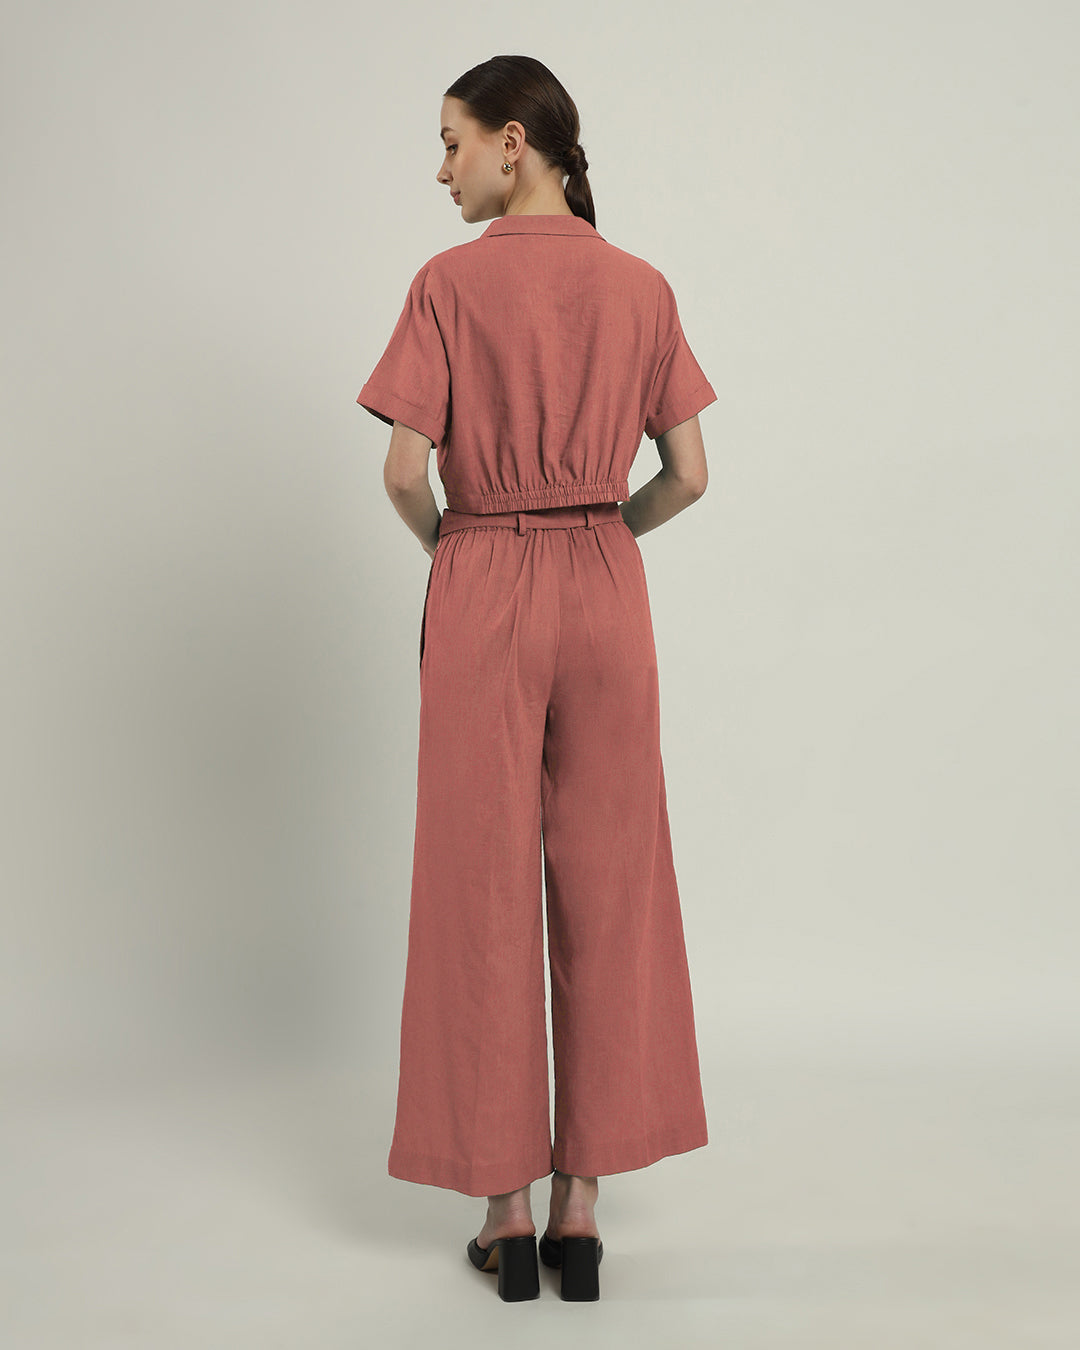 Pants Matching Set- Ivory Pink Lapel Collar